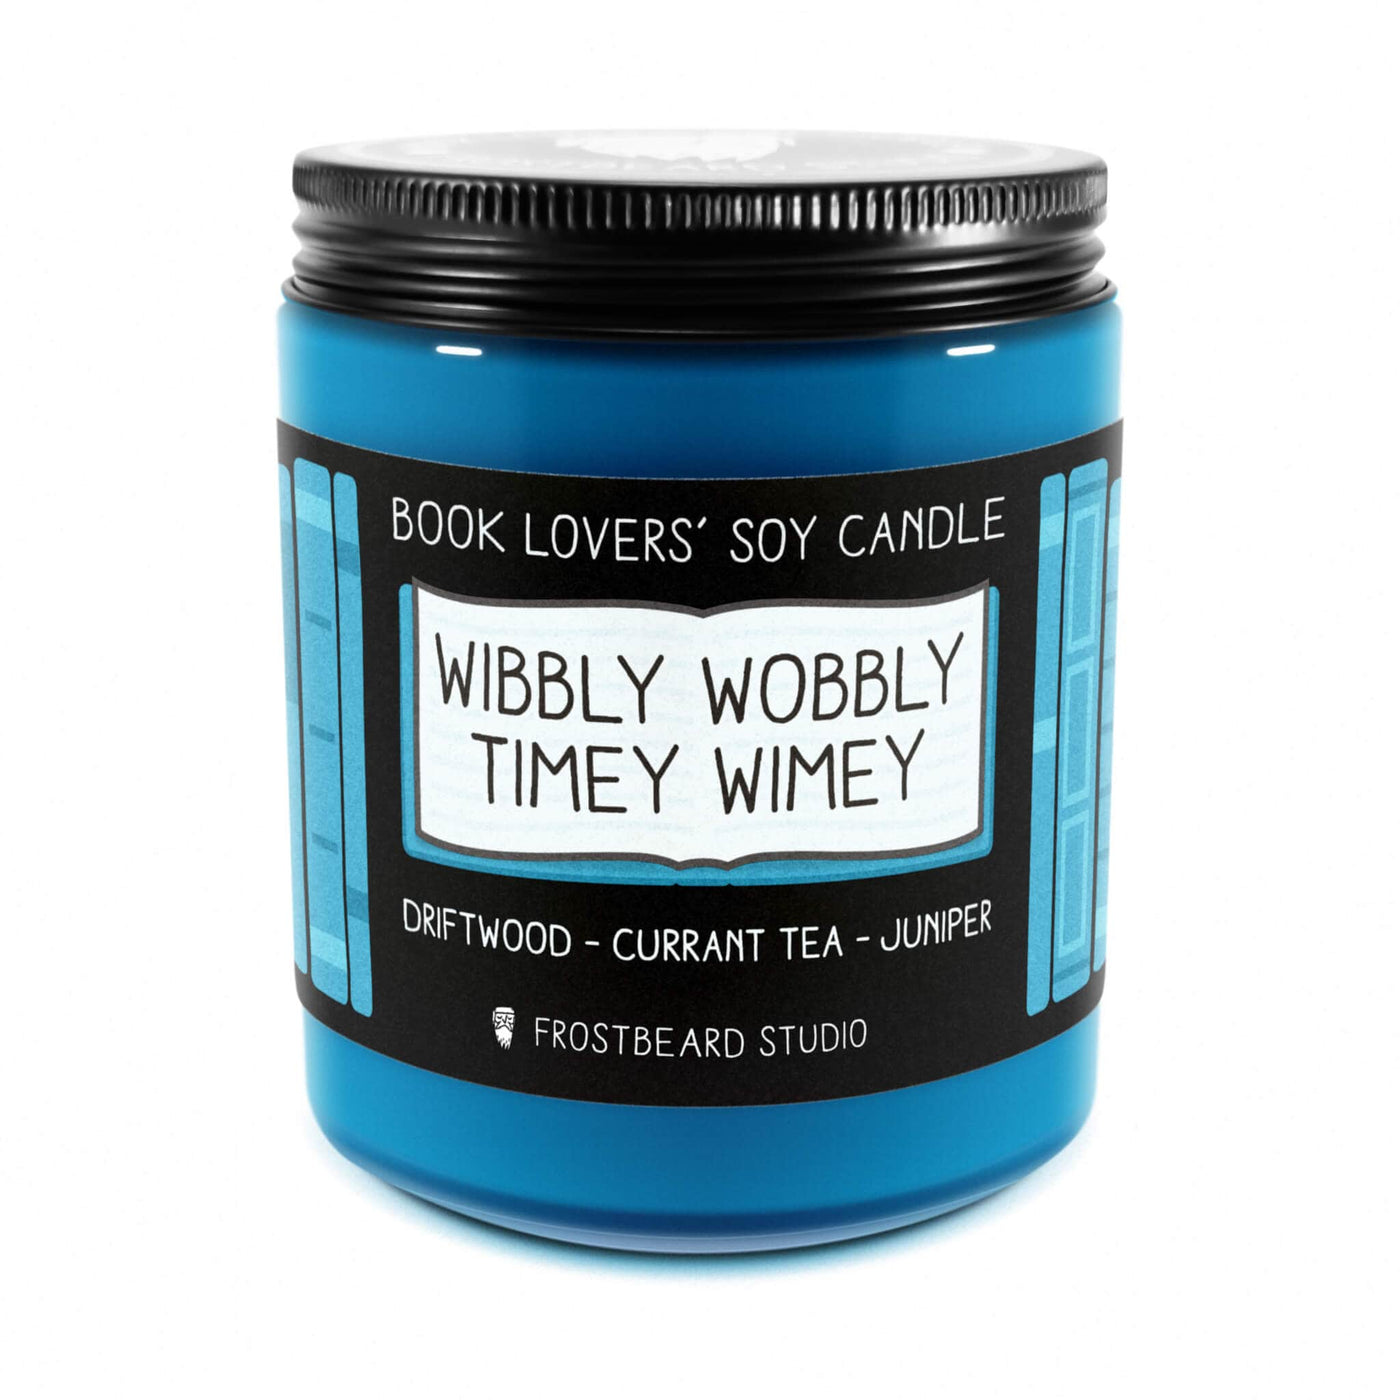 Wibbly Wobbly Timey Wimey - 8 oz Jar - Book Lovers' Soy Candle - Frostbeard Studio